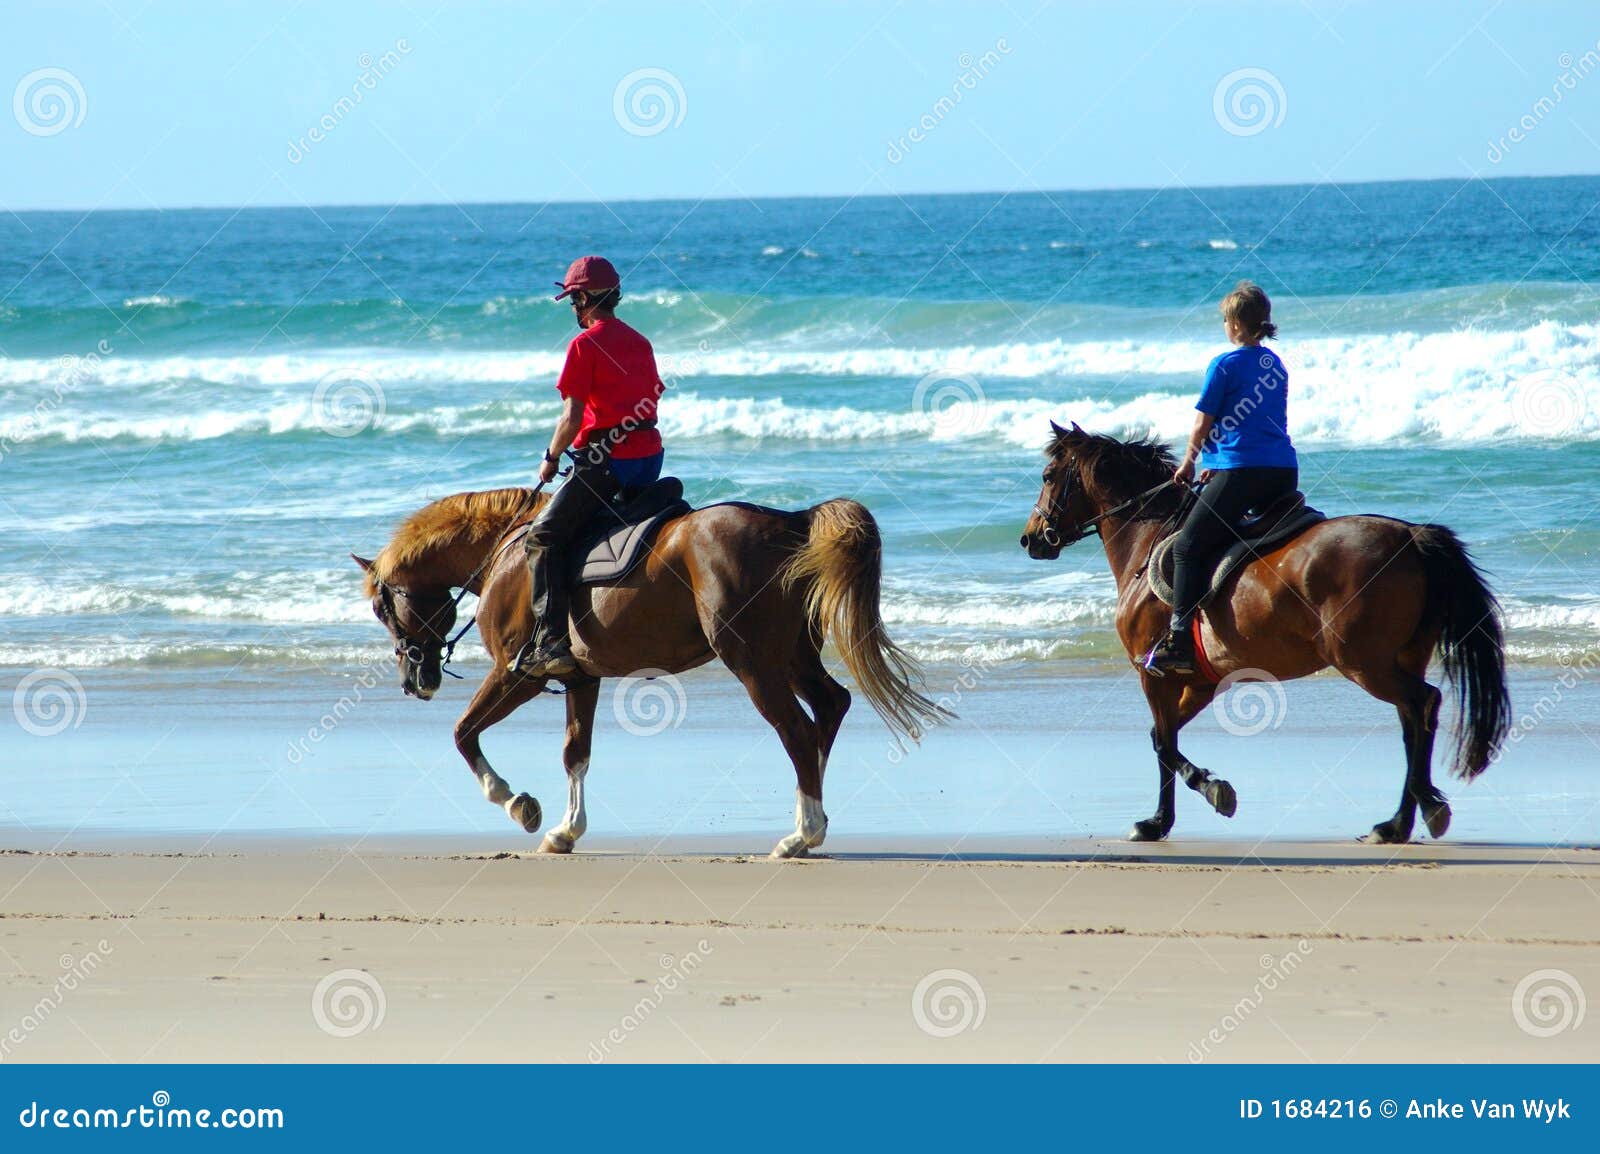 beach riders